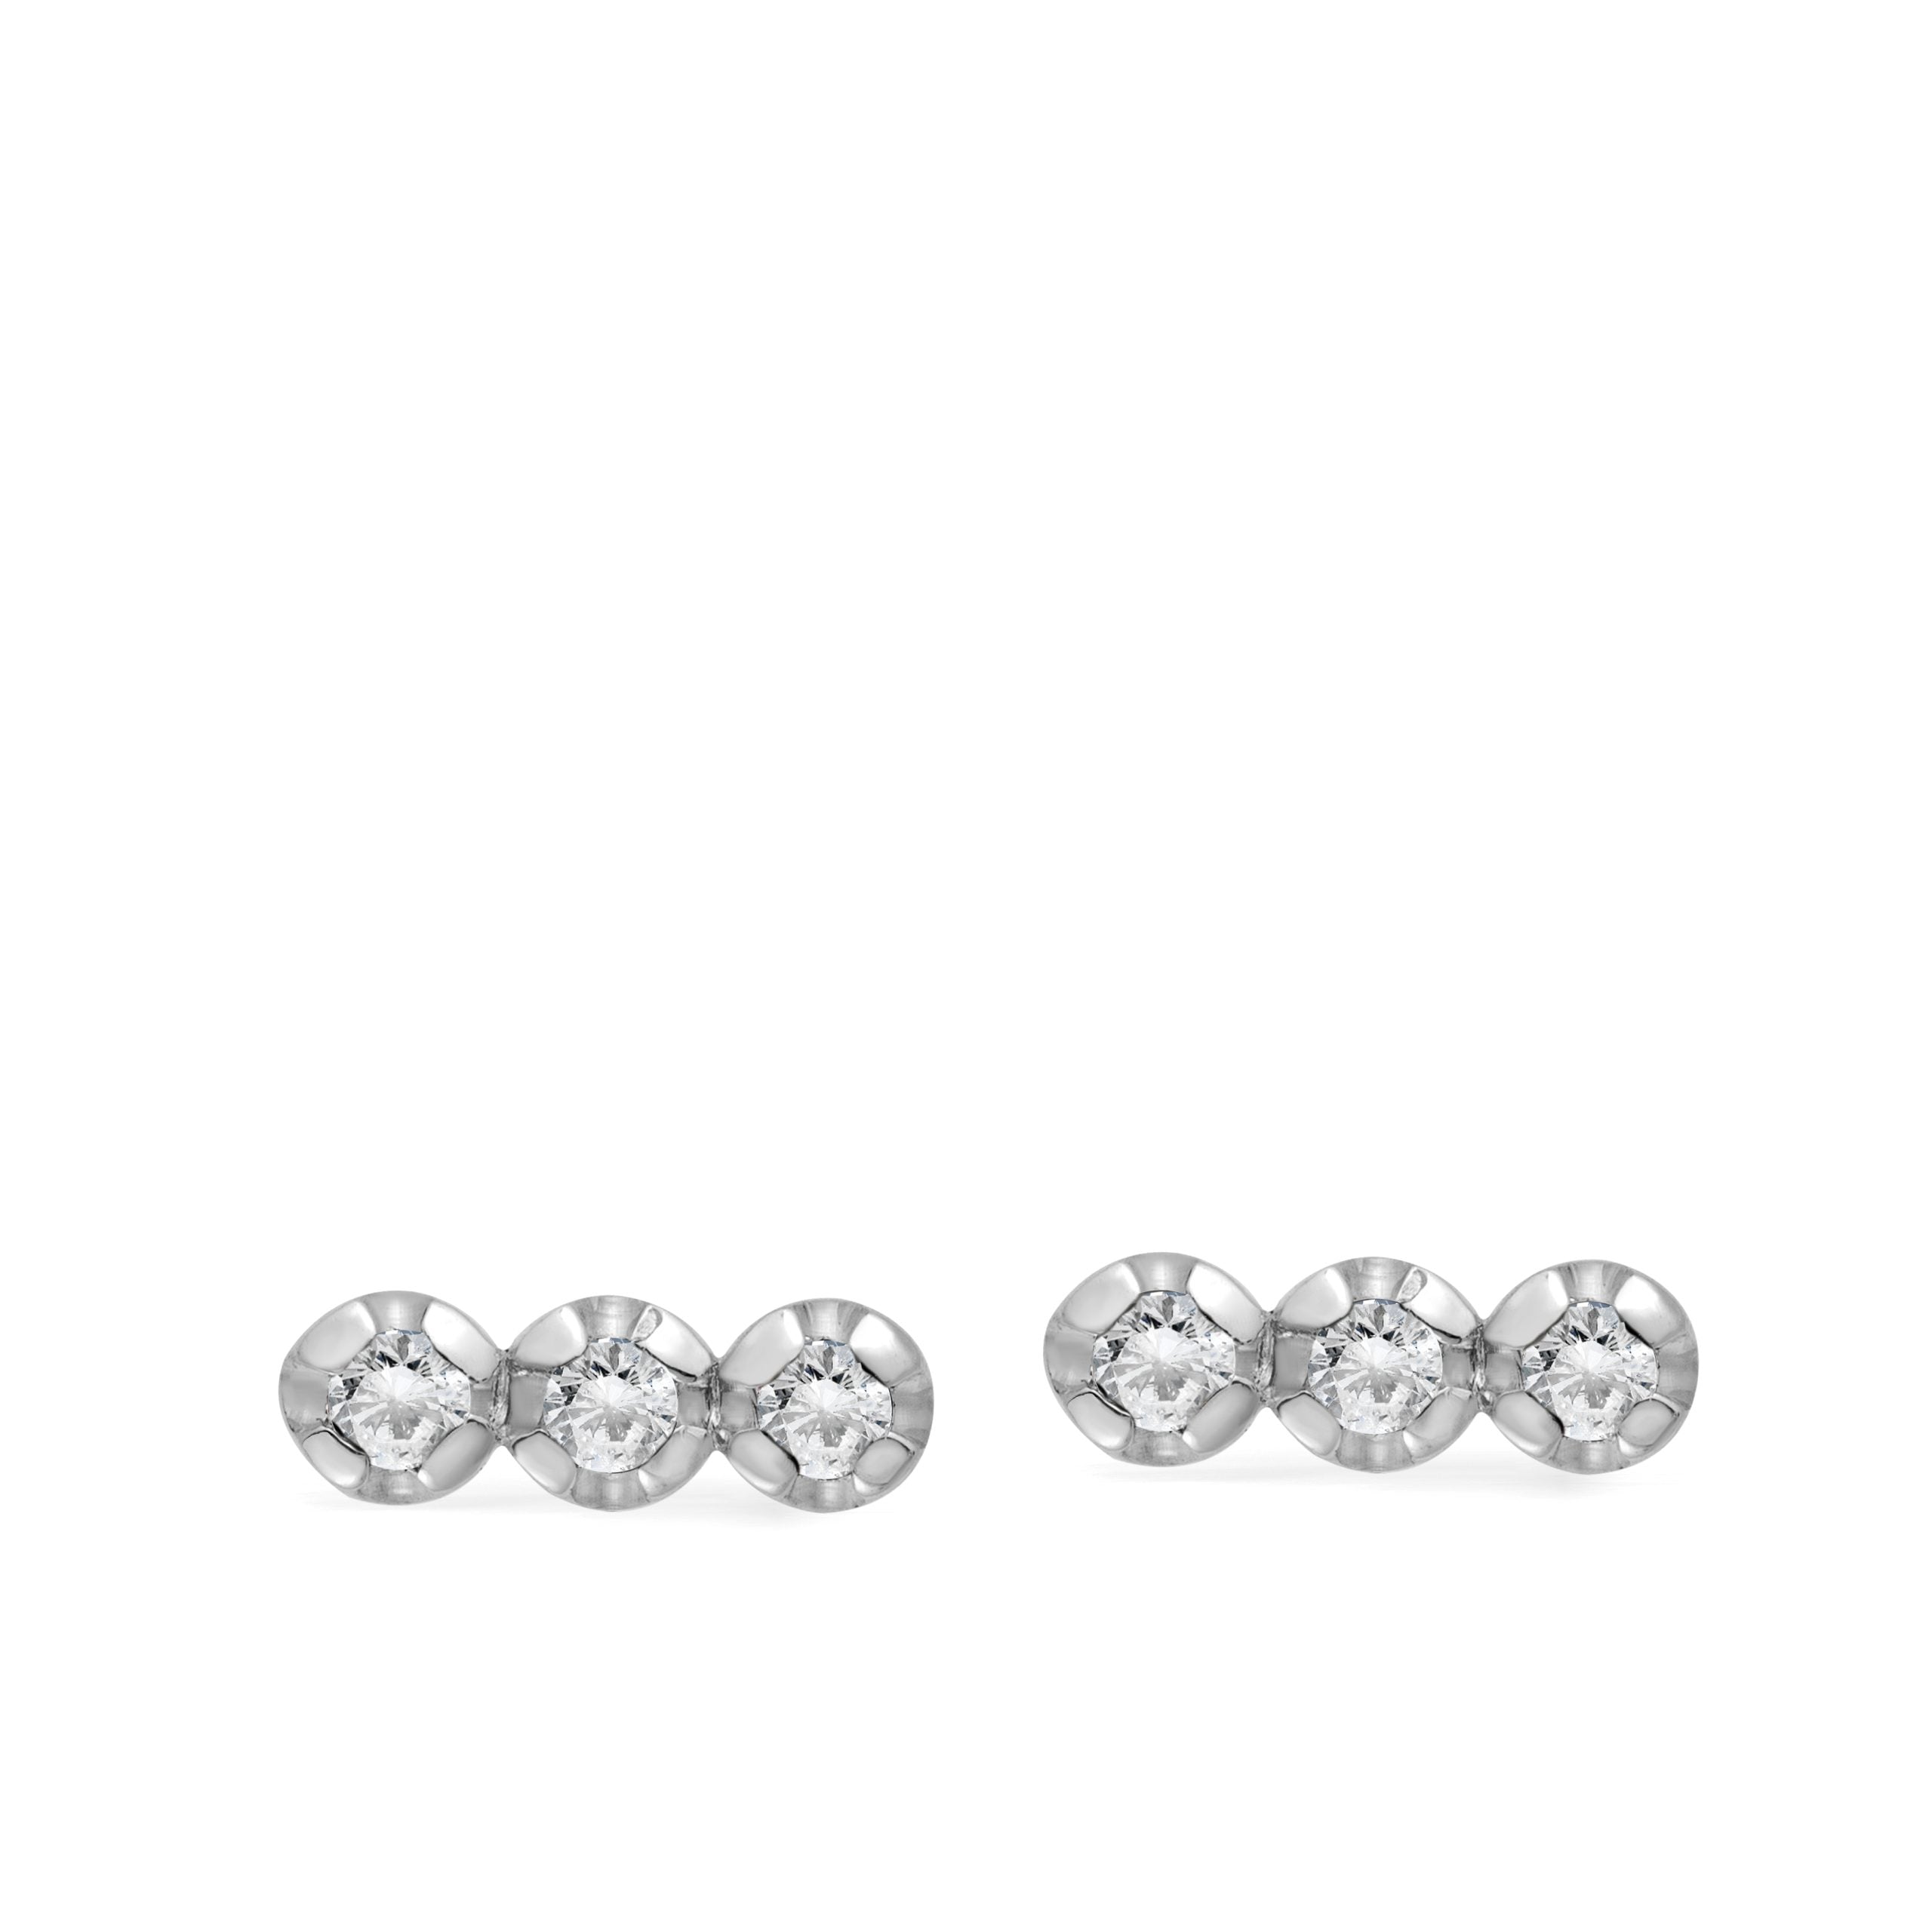 3 Diamond Stud Earrings 14K Gold